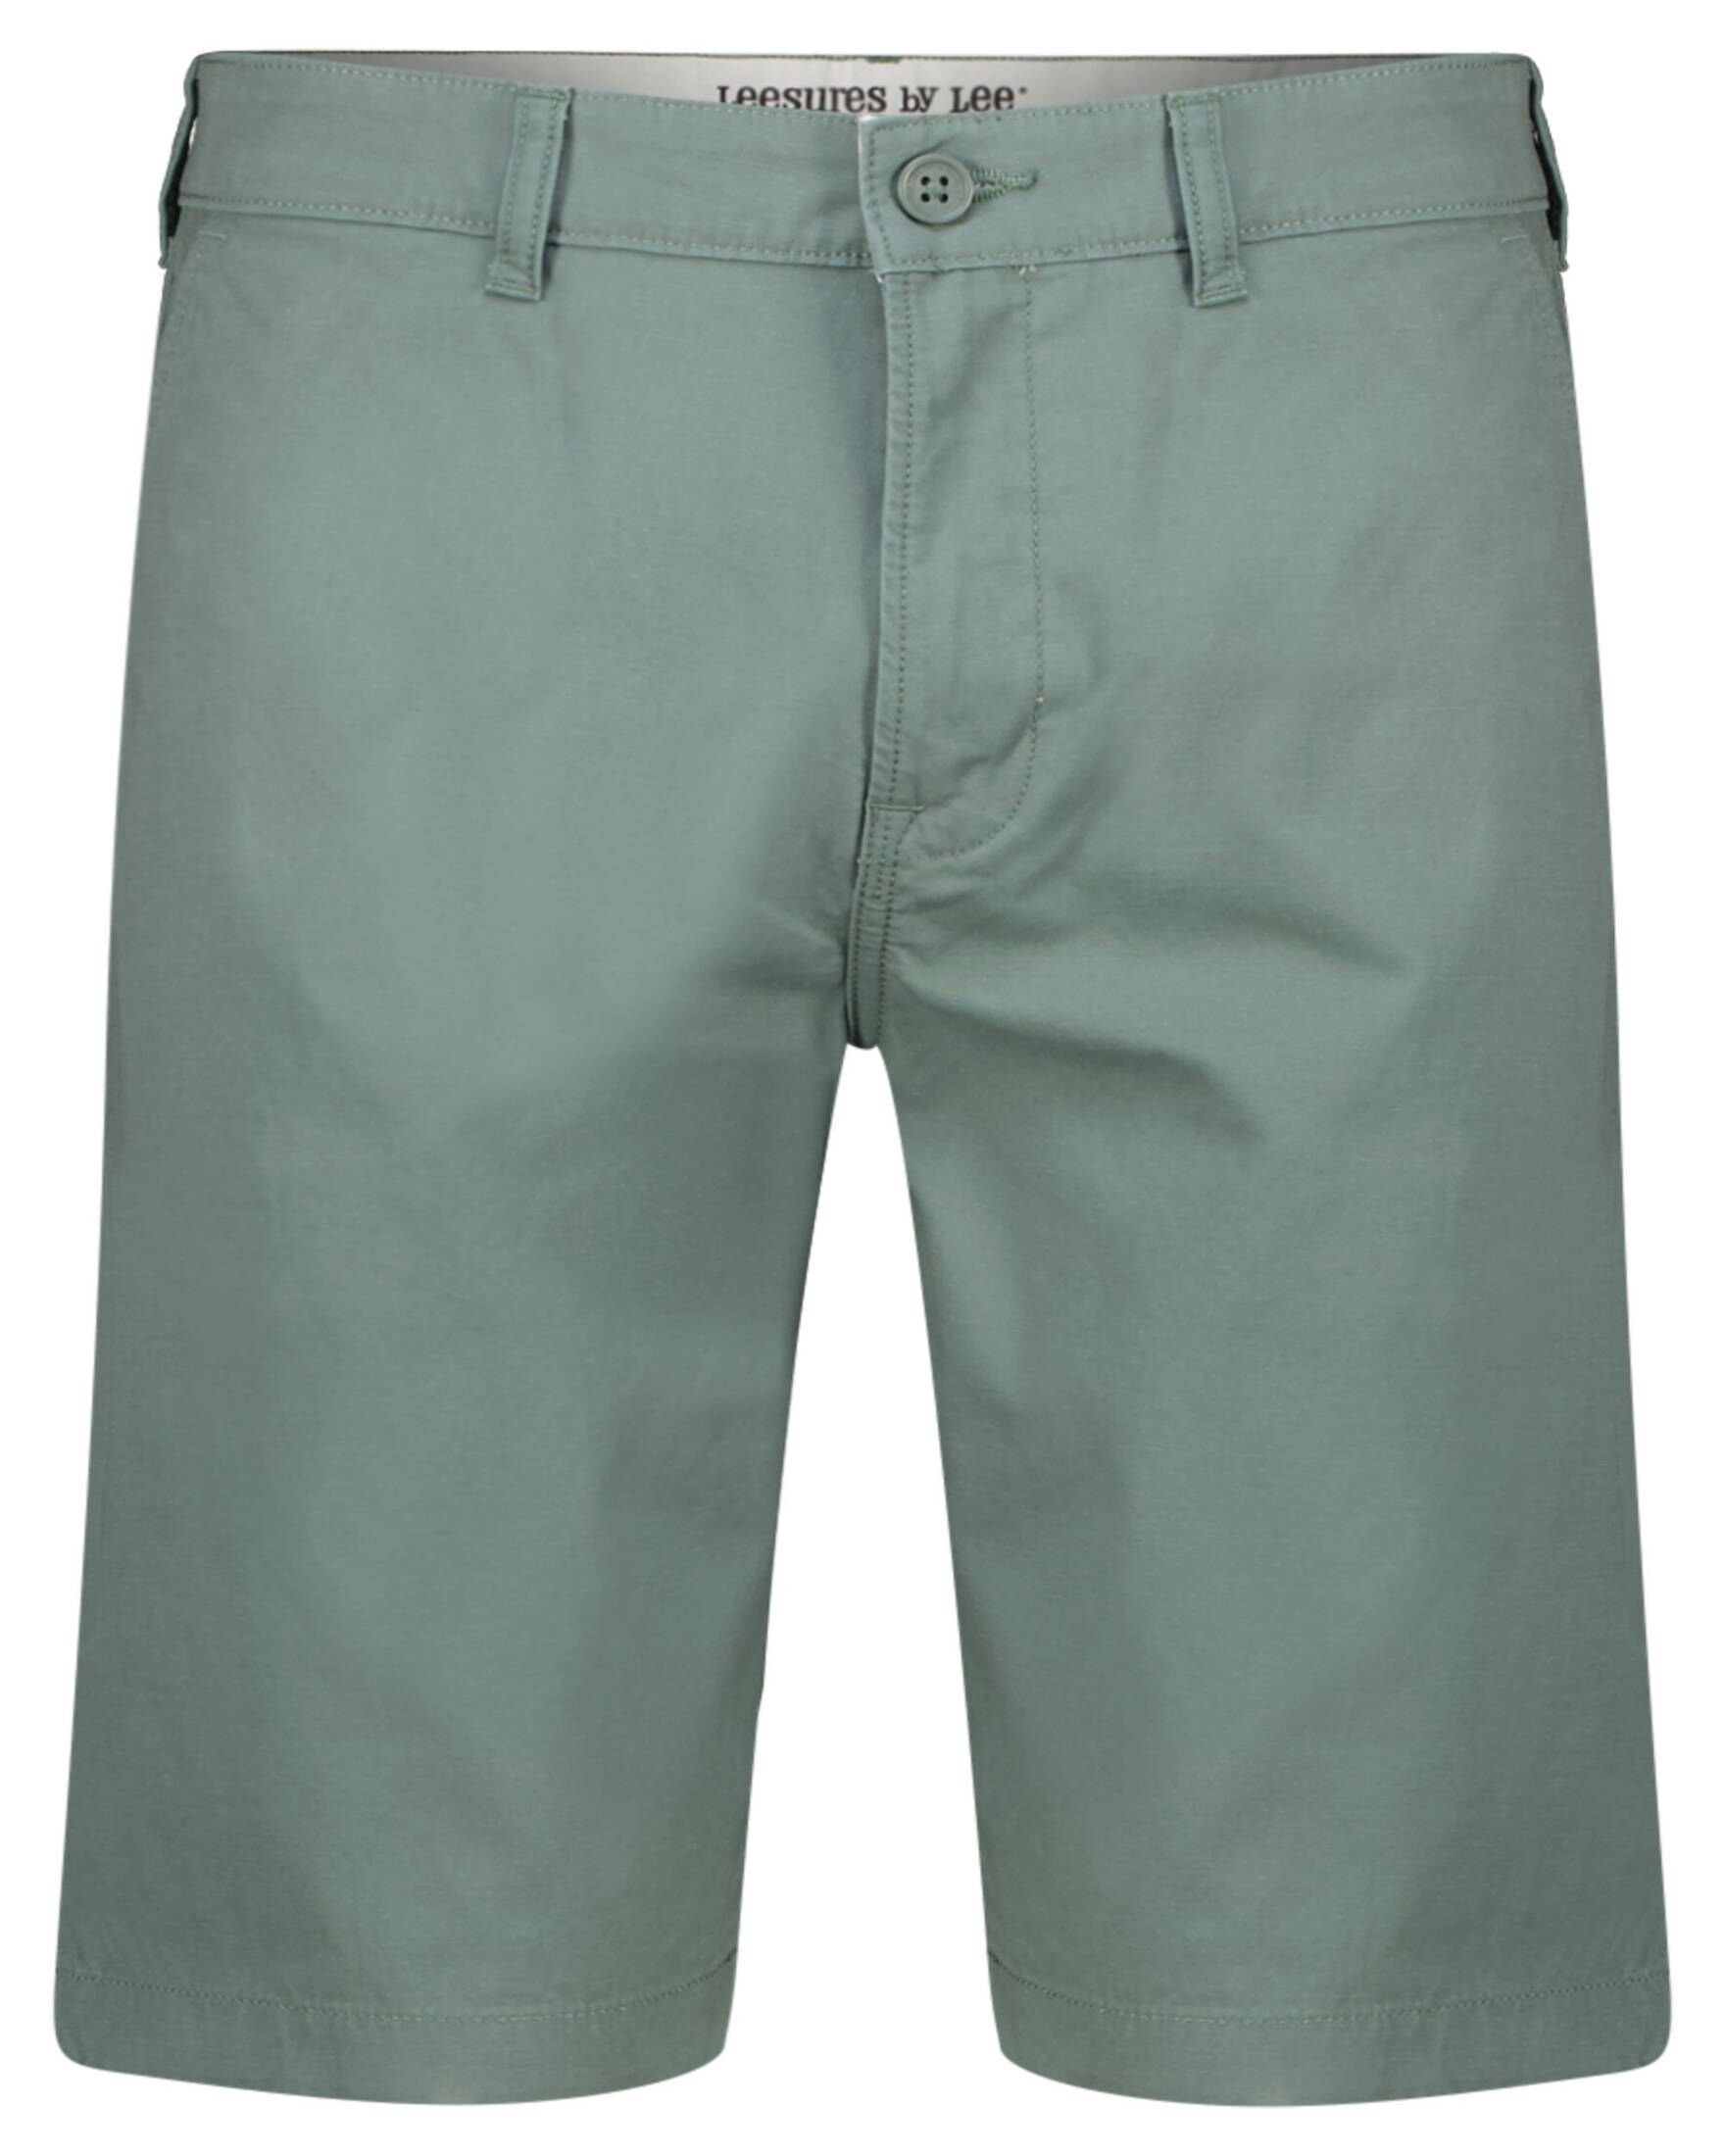 Timberland Shorts online kaufen | OTTO